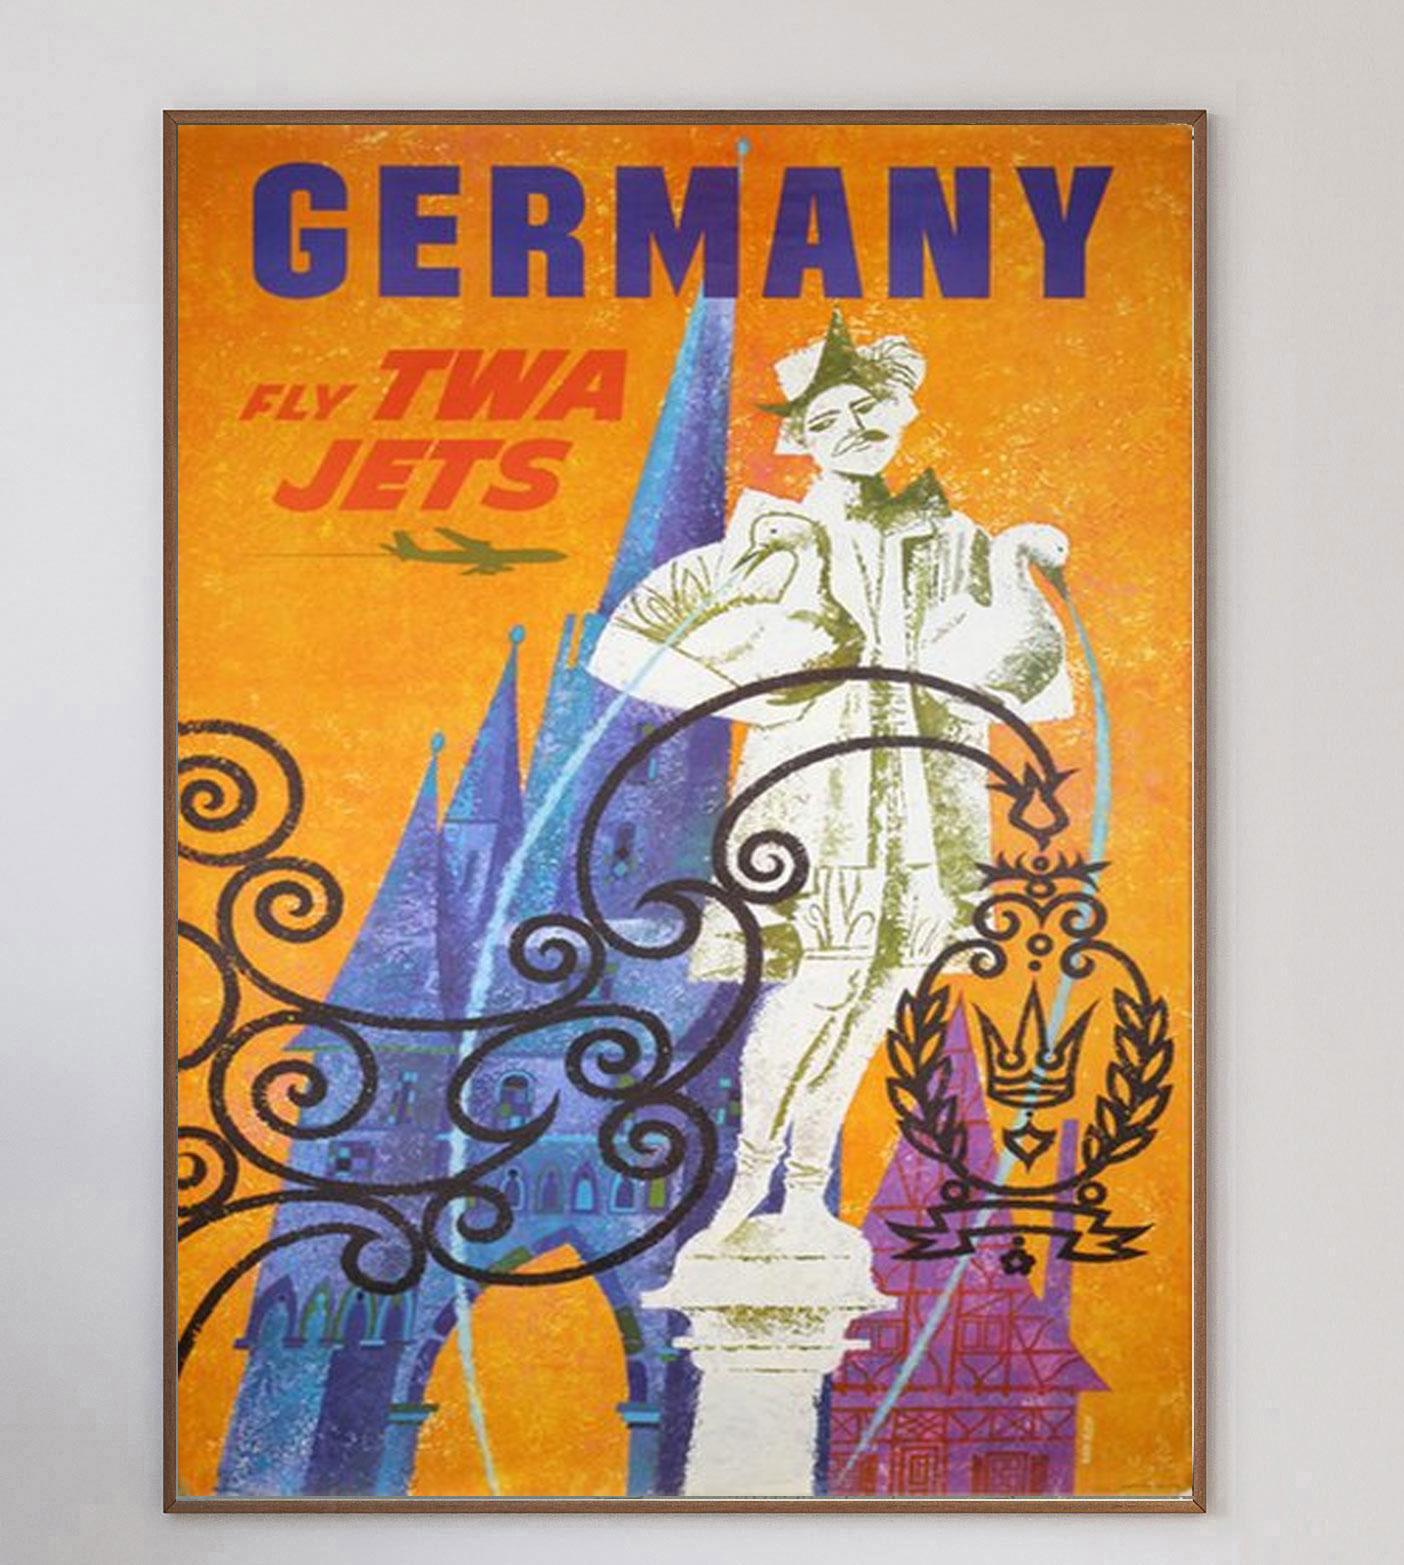 Cette affiche a été créée en 1959 pour la compagnie Trans World Airlines d'Howard Hughes afin de promouvoir ses liaisons avec l'Allemagne au départ des États-Unis. Illustré par l'influent artiste américain David Klein, ce dessin met en scène des